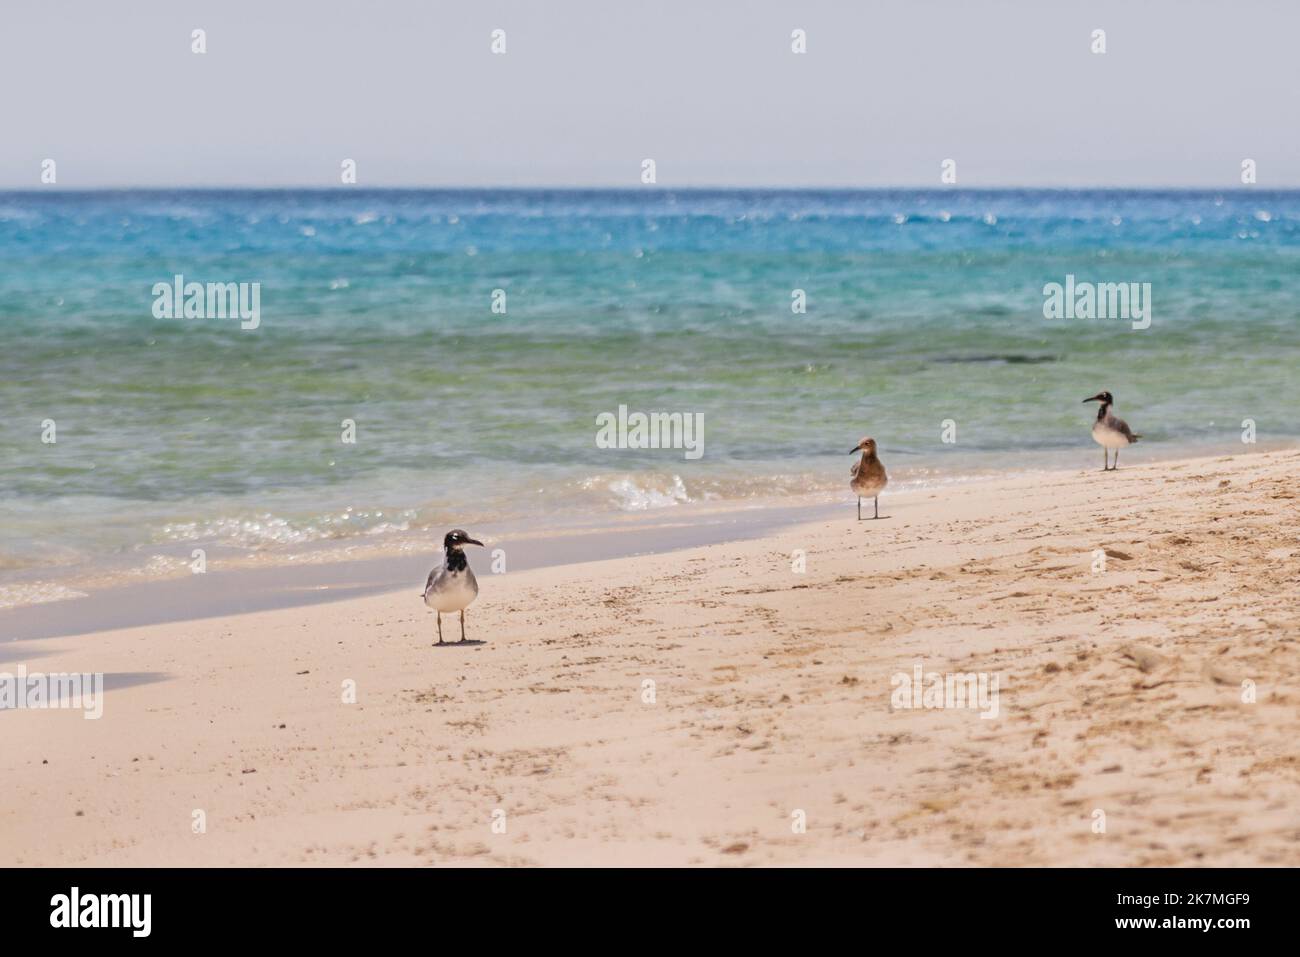 Drei Möwen stehen in der Brandung am Sandstrand. Rote Meer Küste mit Seevögeln. Ägypten. Stockfoto